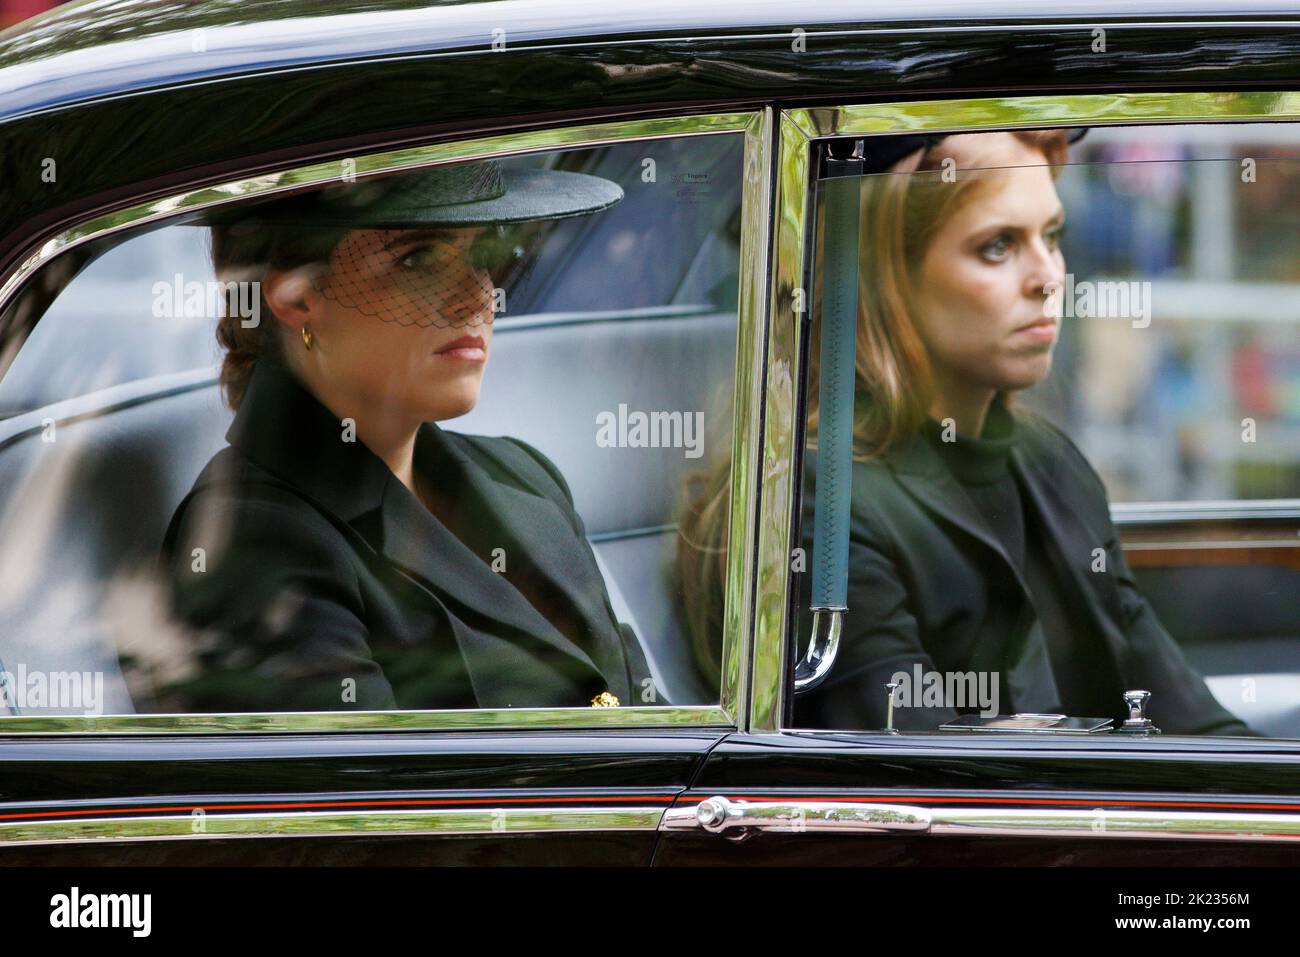 Das Staatsfuneral Ihrer Majestät Königin Elizabeth II, von der Mall aus gesehen. Die Prinzessinnen Beatrice und Eugenie werden als Matrosen von Th hinter den Sarg getrieben Stockfoto